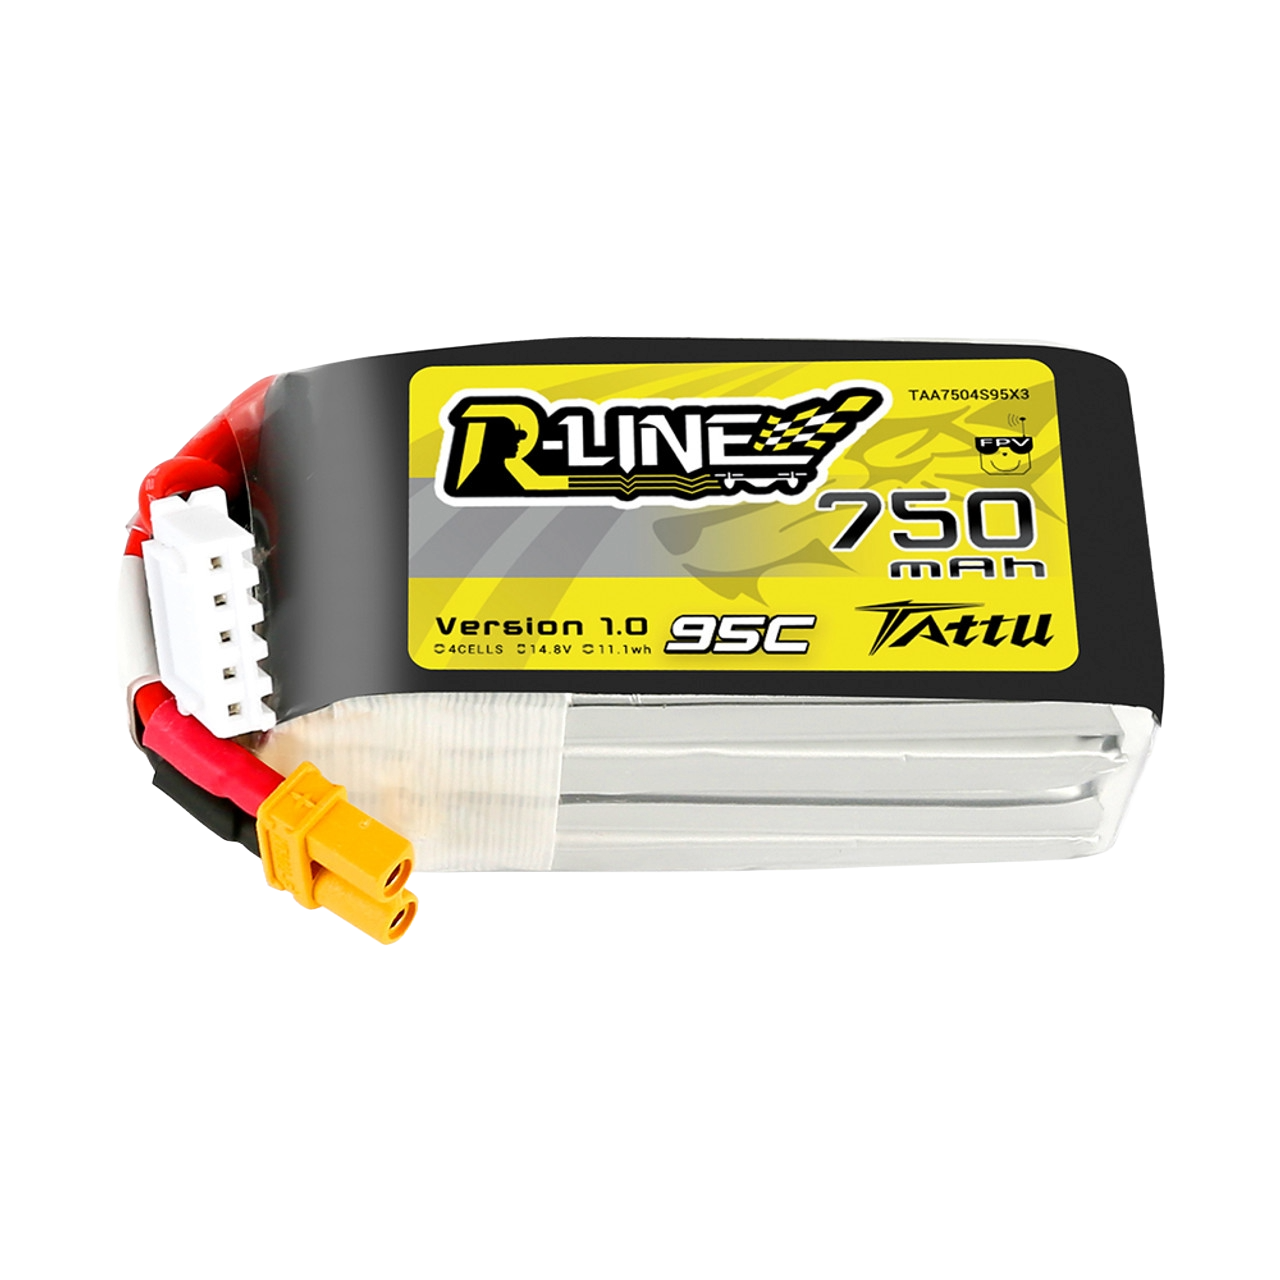 Tattu R-Line 750mAh 14.8V 95C 4S1P Lipo Battery Pack with XT30 Plug - DroneDynamics.ca